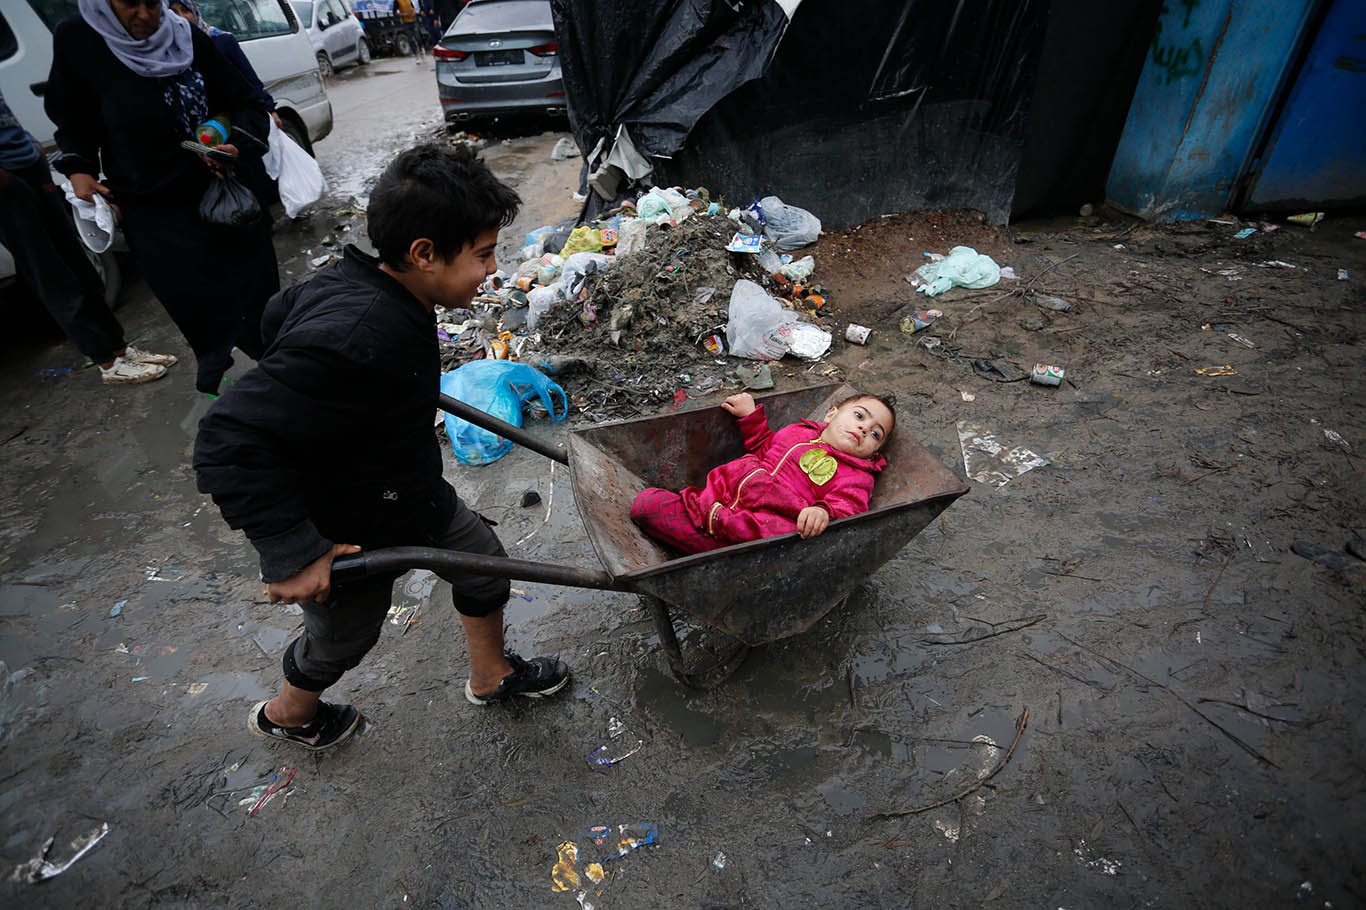 BM: Gazze'de beş yaş altı çocukların yüzde 10'u akut yetersiz beslenmeden muzdarip